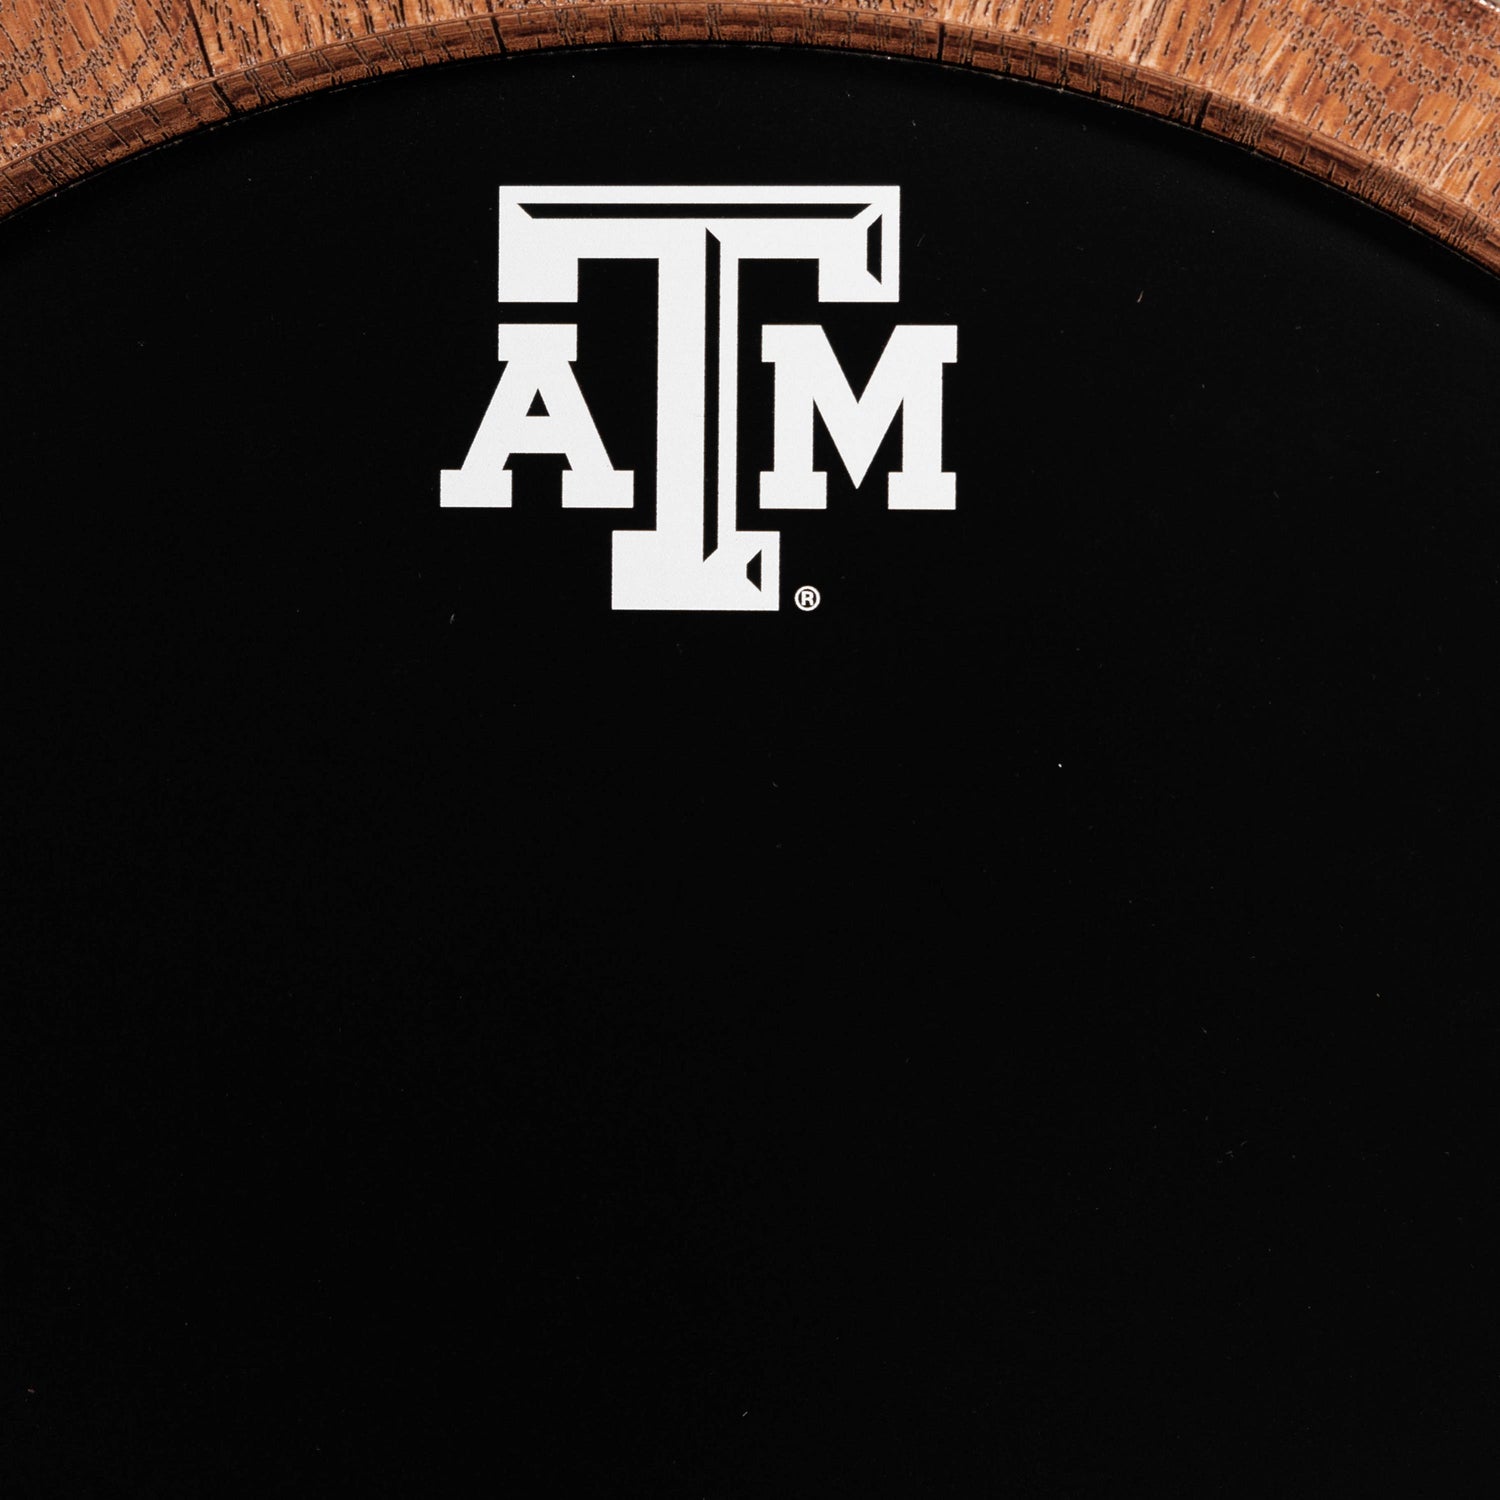 Texas A&M Faux Barrel Round Chalkboard